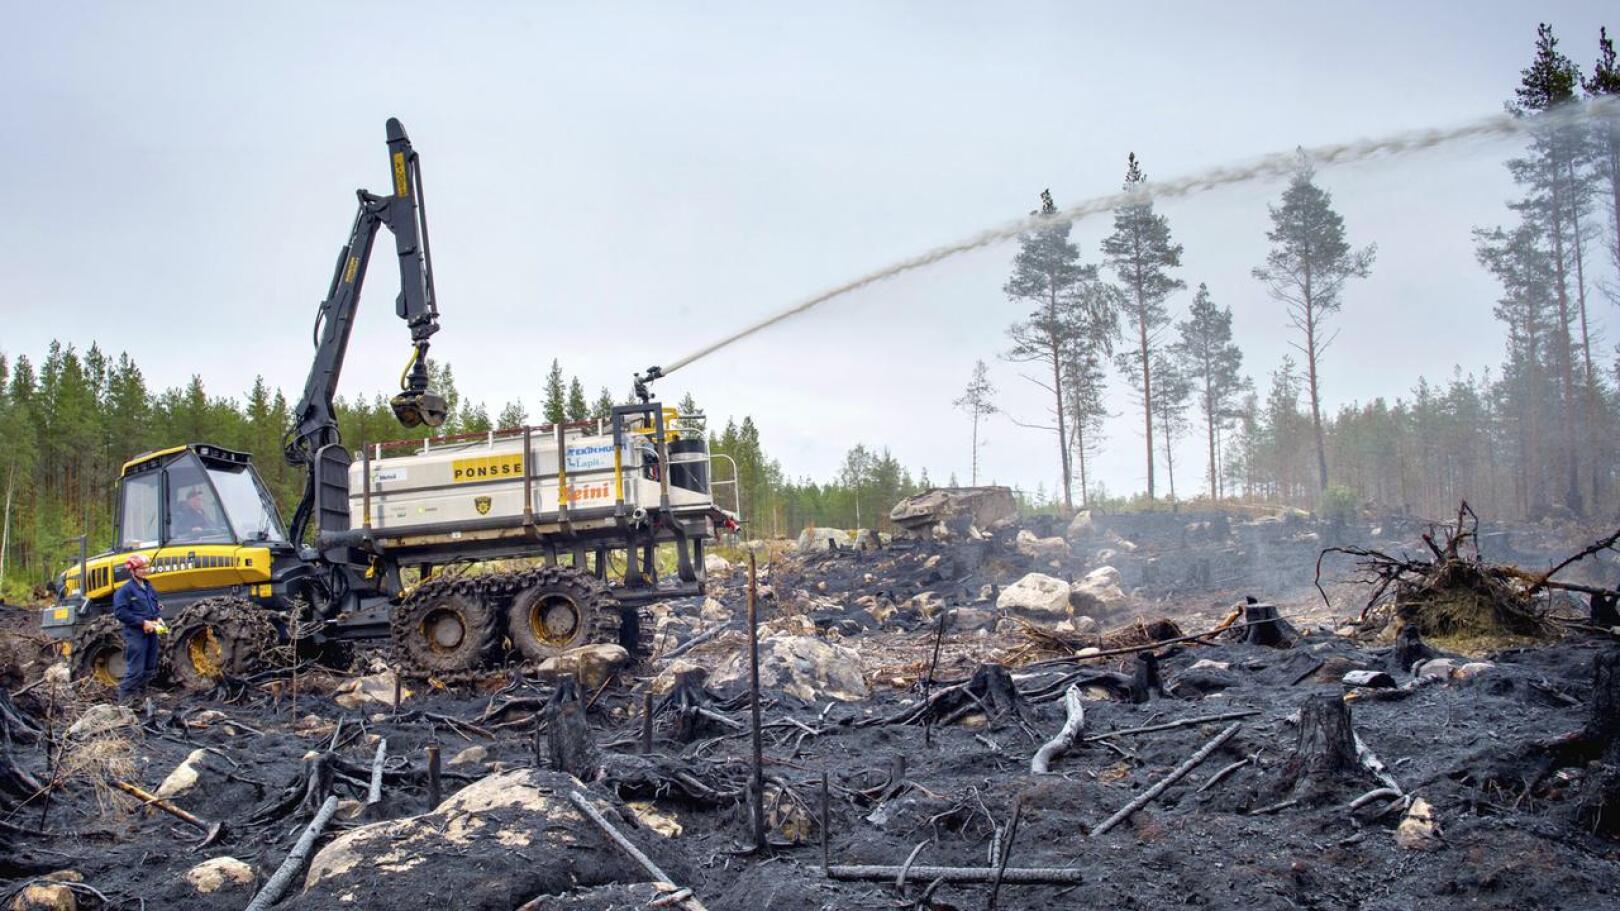 Yhdestä Suomen suurimmasta palosta aiheutuneet kustannukset nousivat 2,3 miljoonaan euroon, josta valtio korvasi 1,6 miljoonaa. Loppu jää rasittamaan pelastuslaitoksen taloutta.